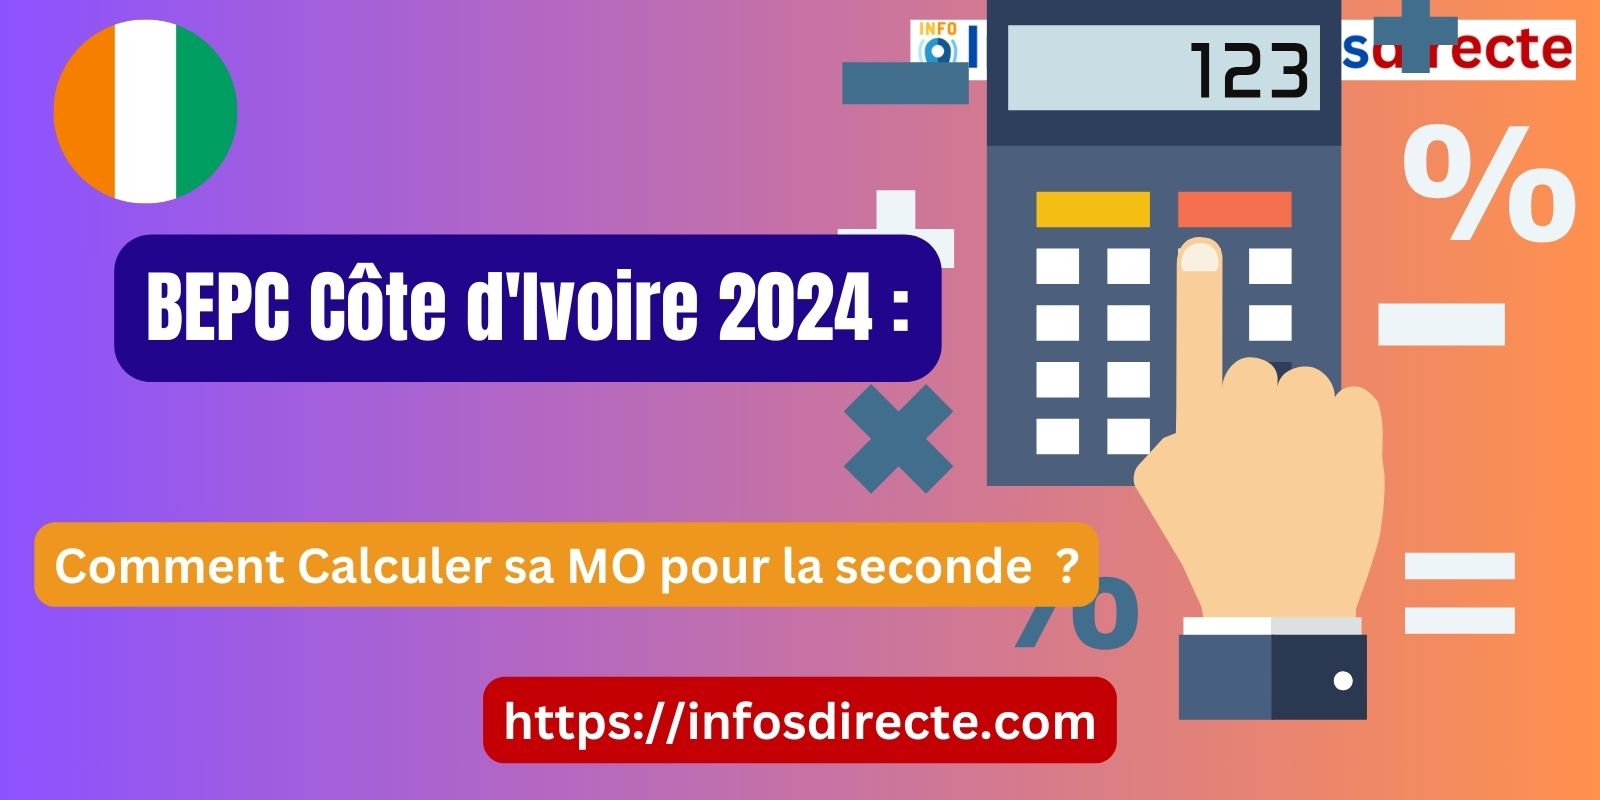 BEPC Côte d'Ivoire 2024 : Comment Calculer sa MO pour la seconde ?